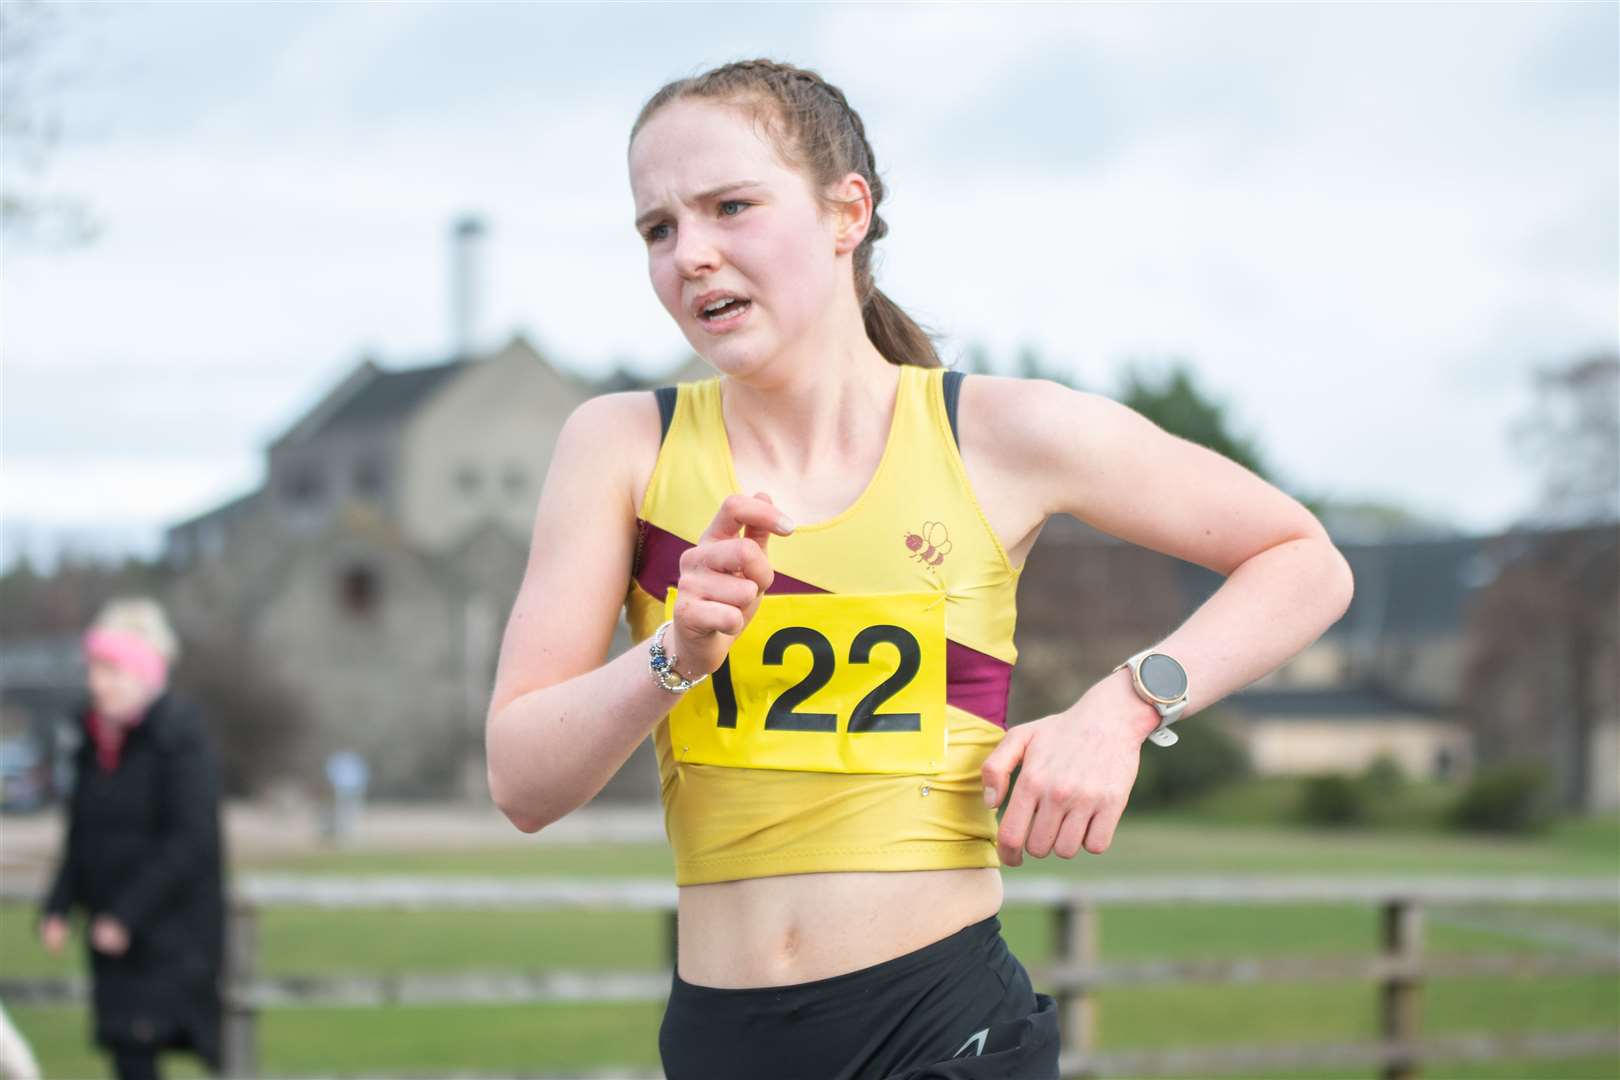 Moray Road Runners 10k Race women's winner Caitlyn Heggie. Picture: Daniel Forsyth